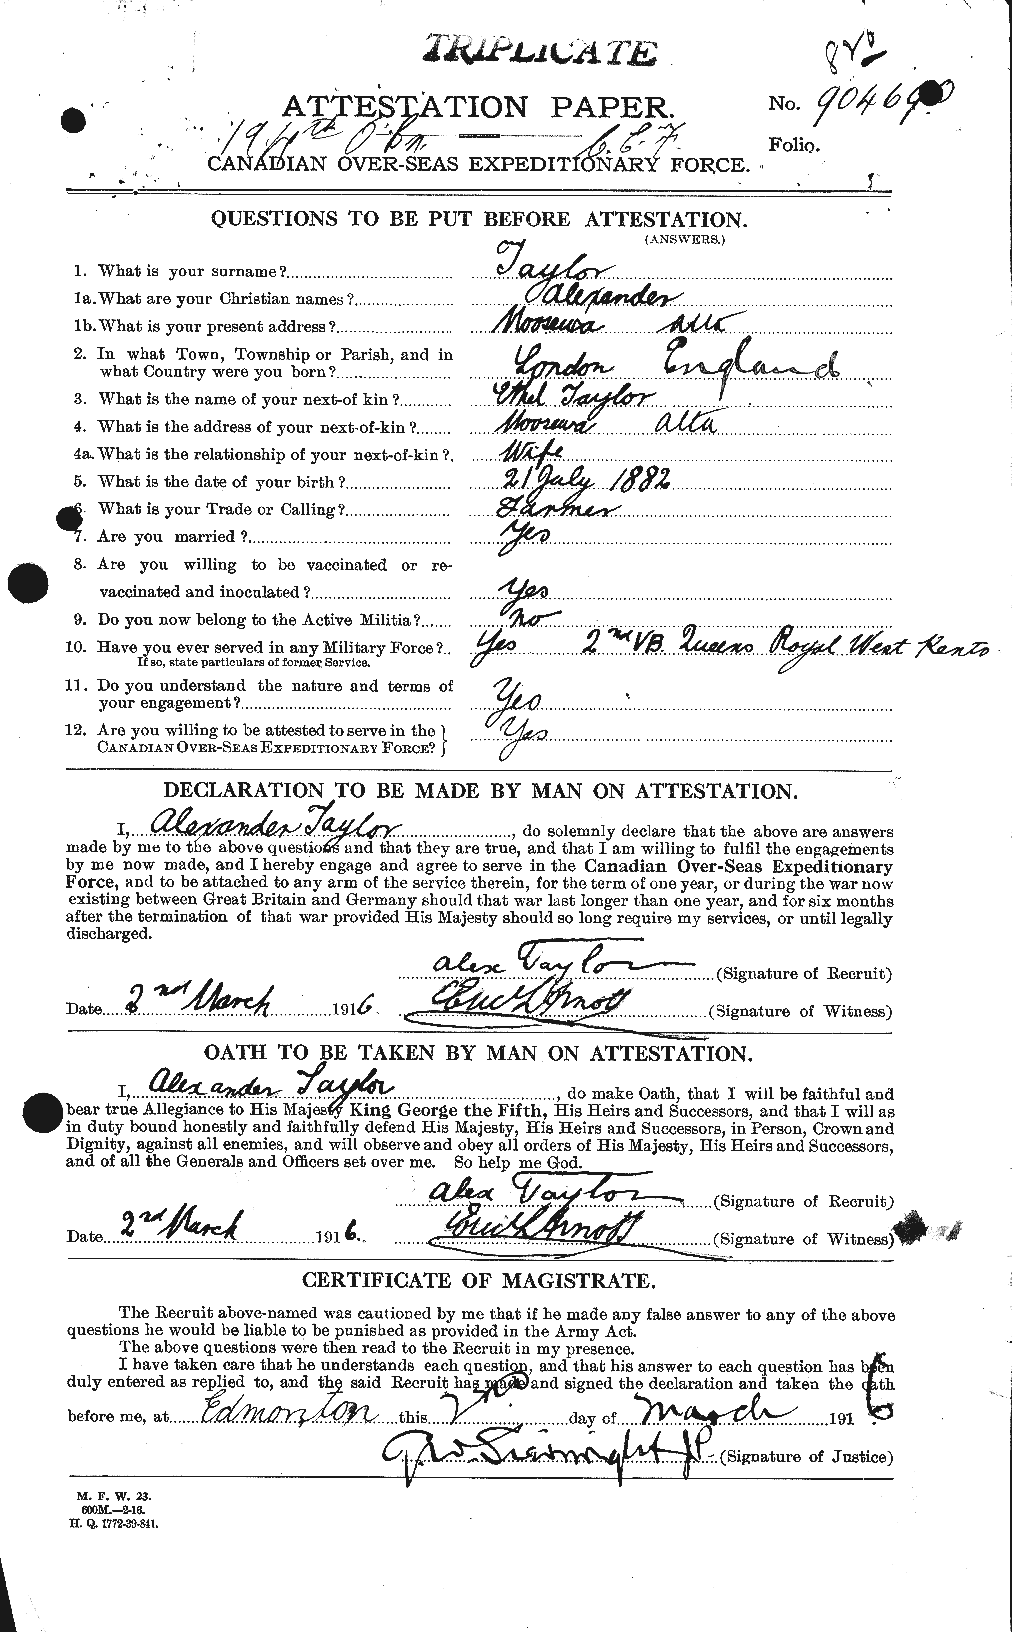 Dossiers du Personnel de la Première Guerre mondiale - CEC 626140a